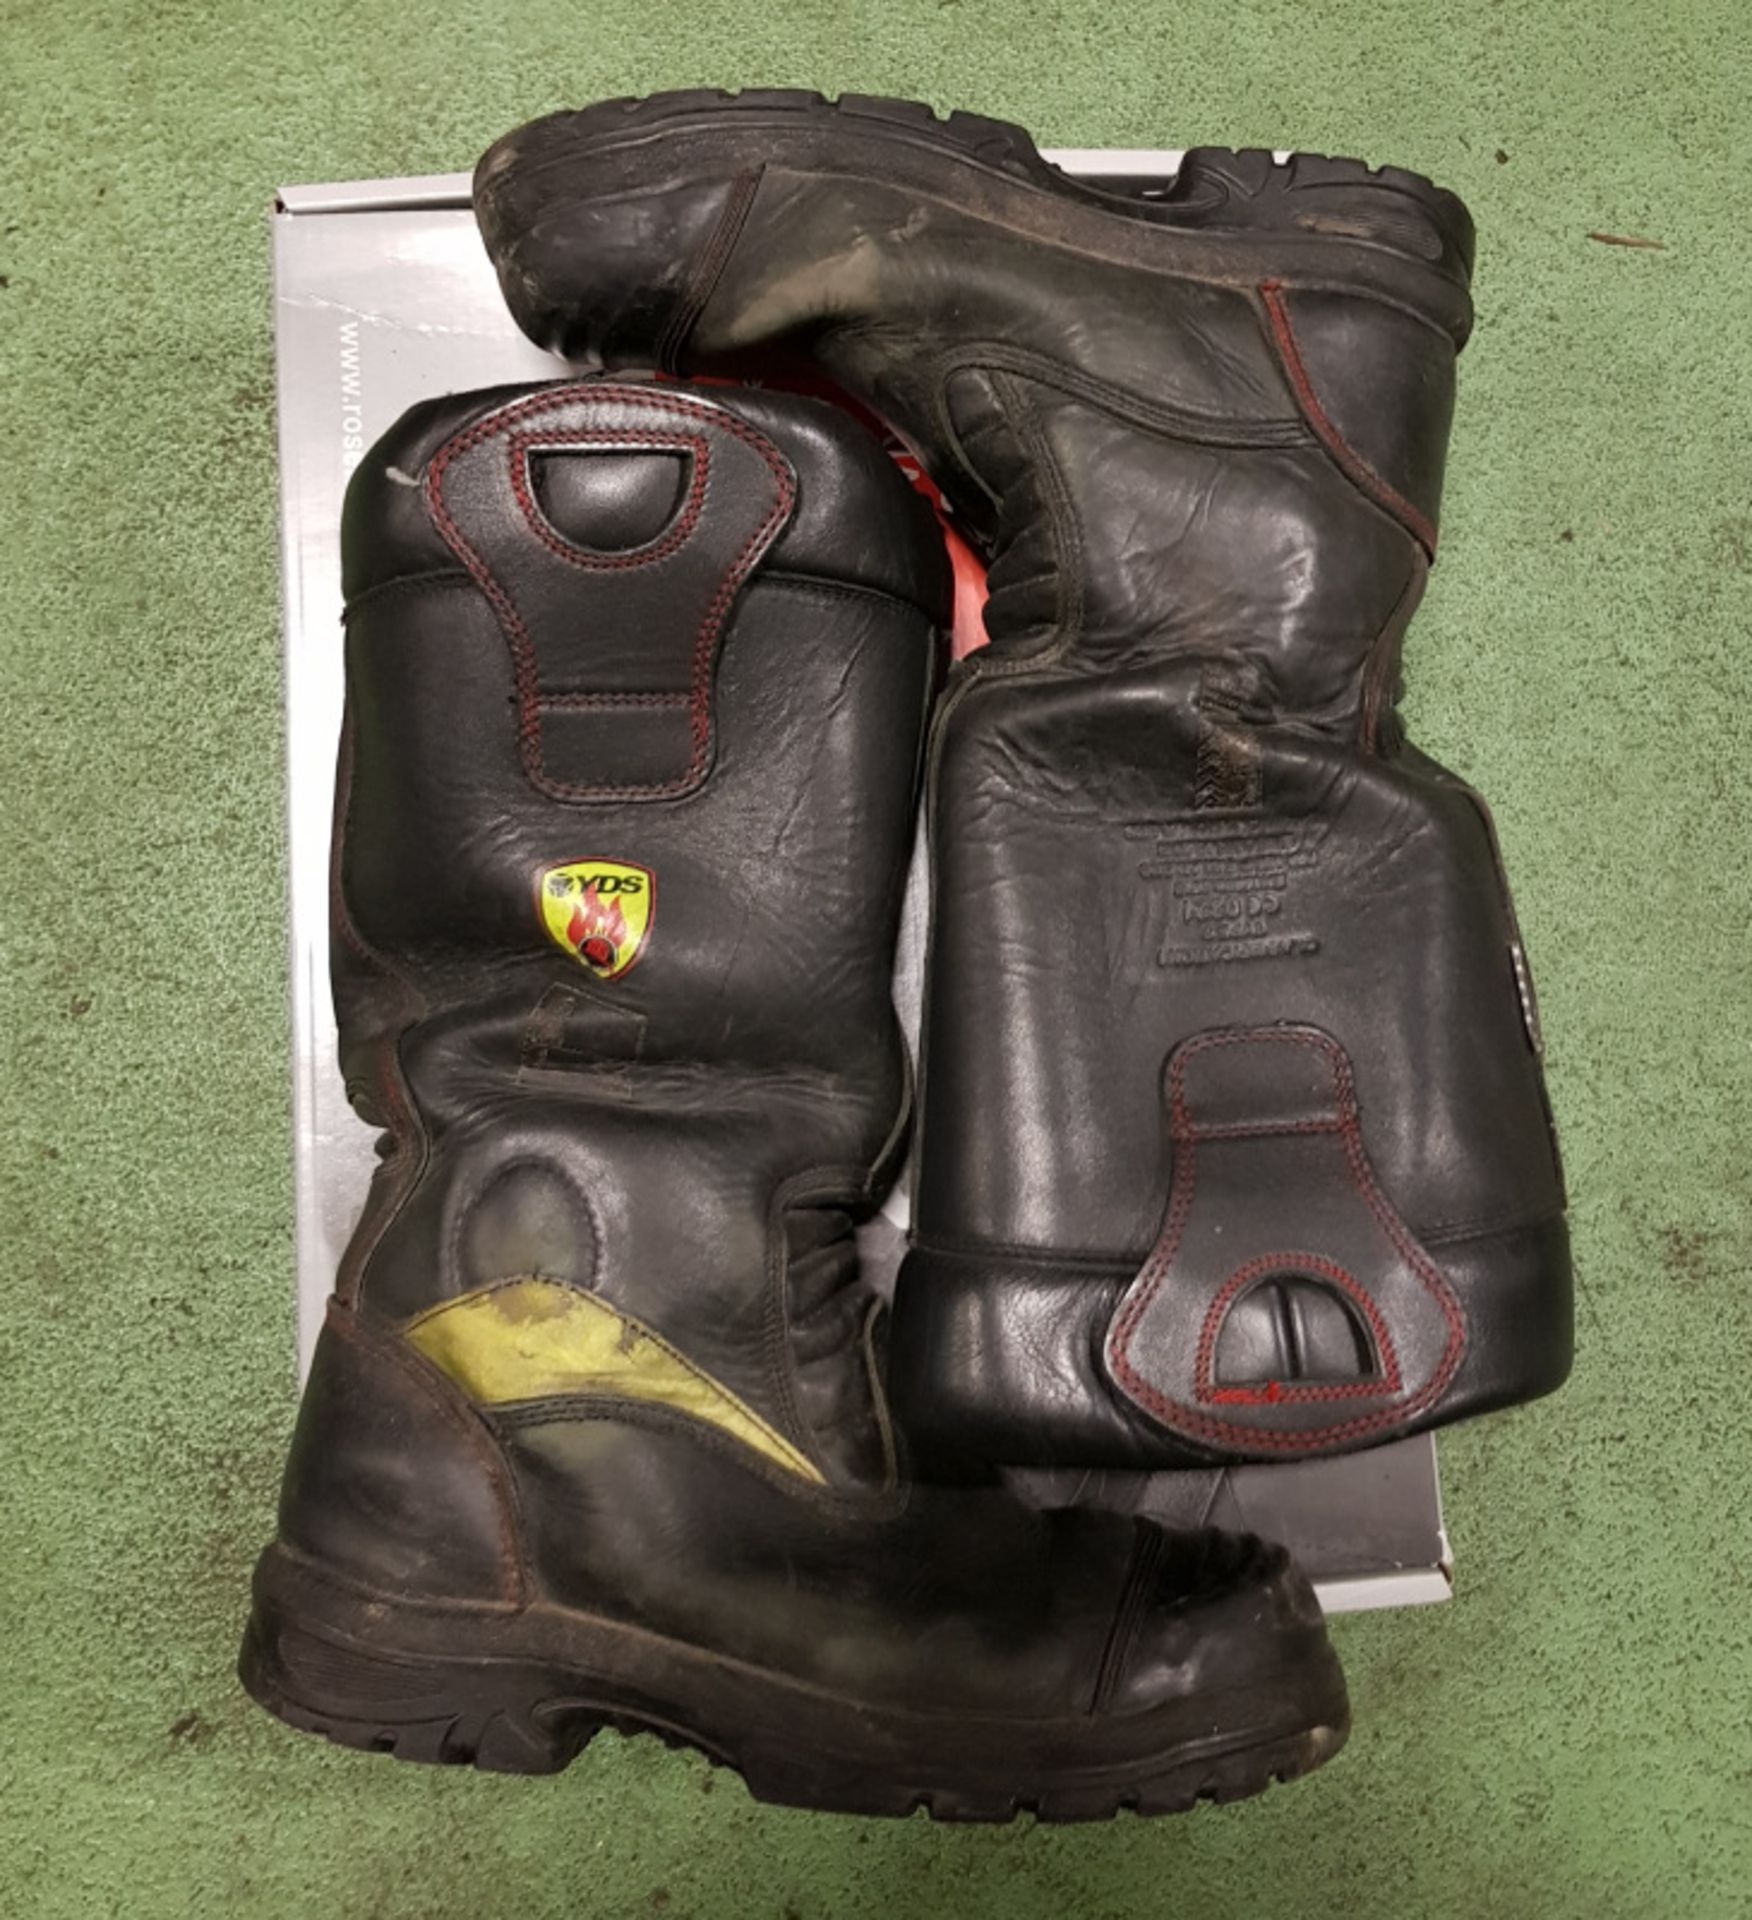 Rosembauer Fire Retardant Boots